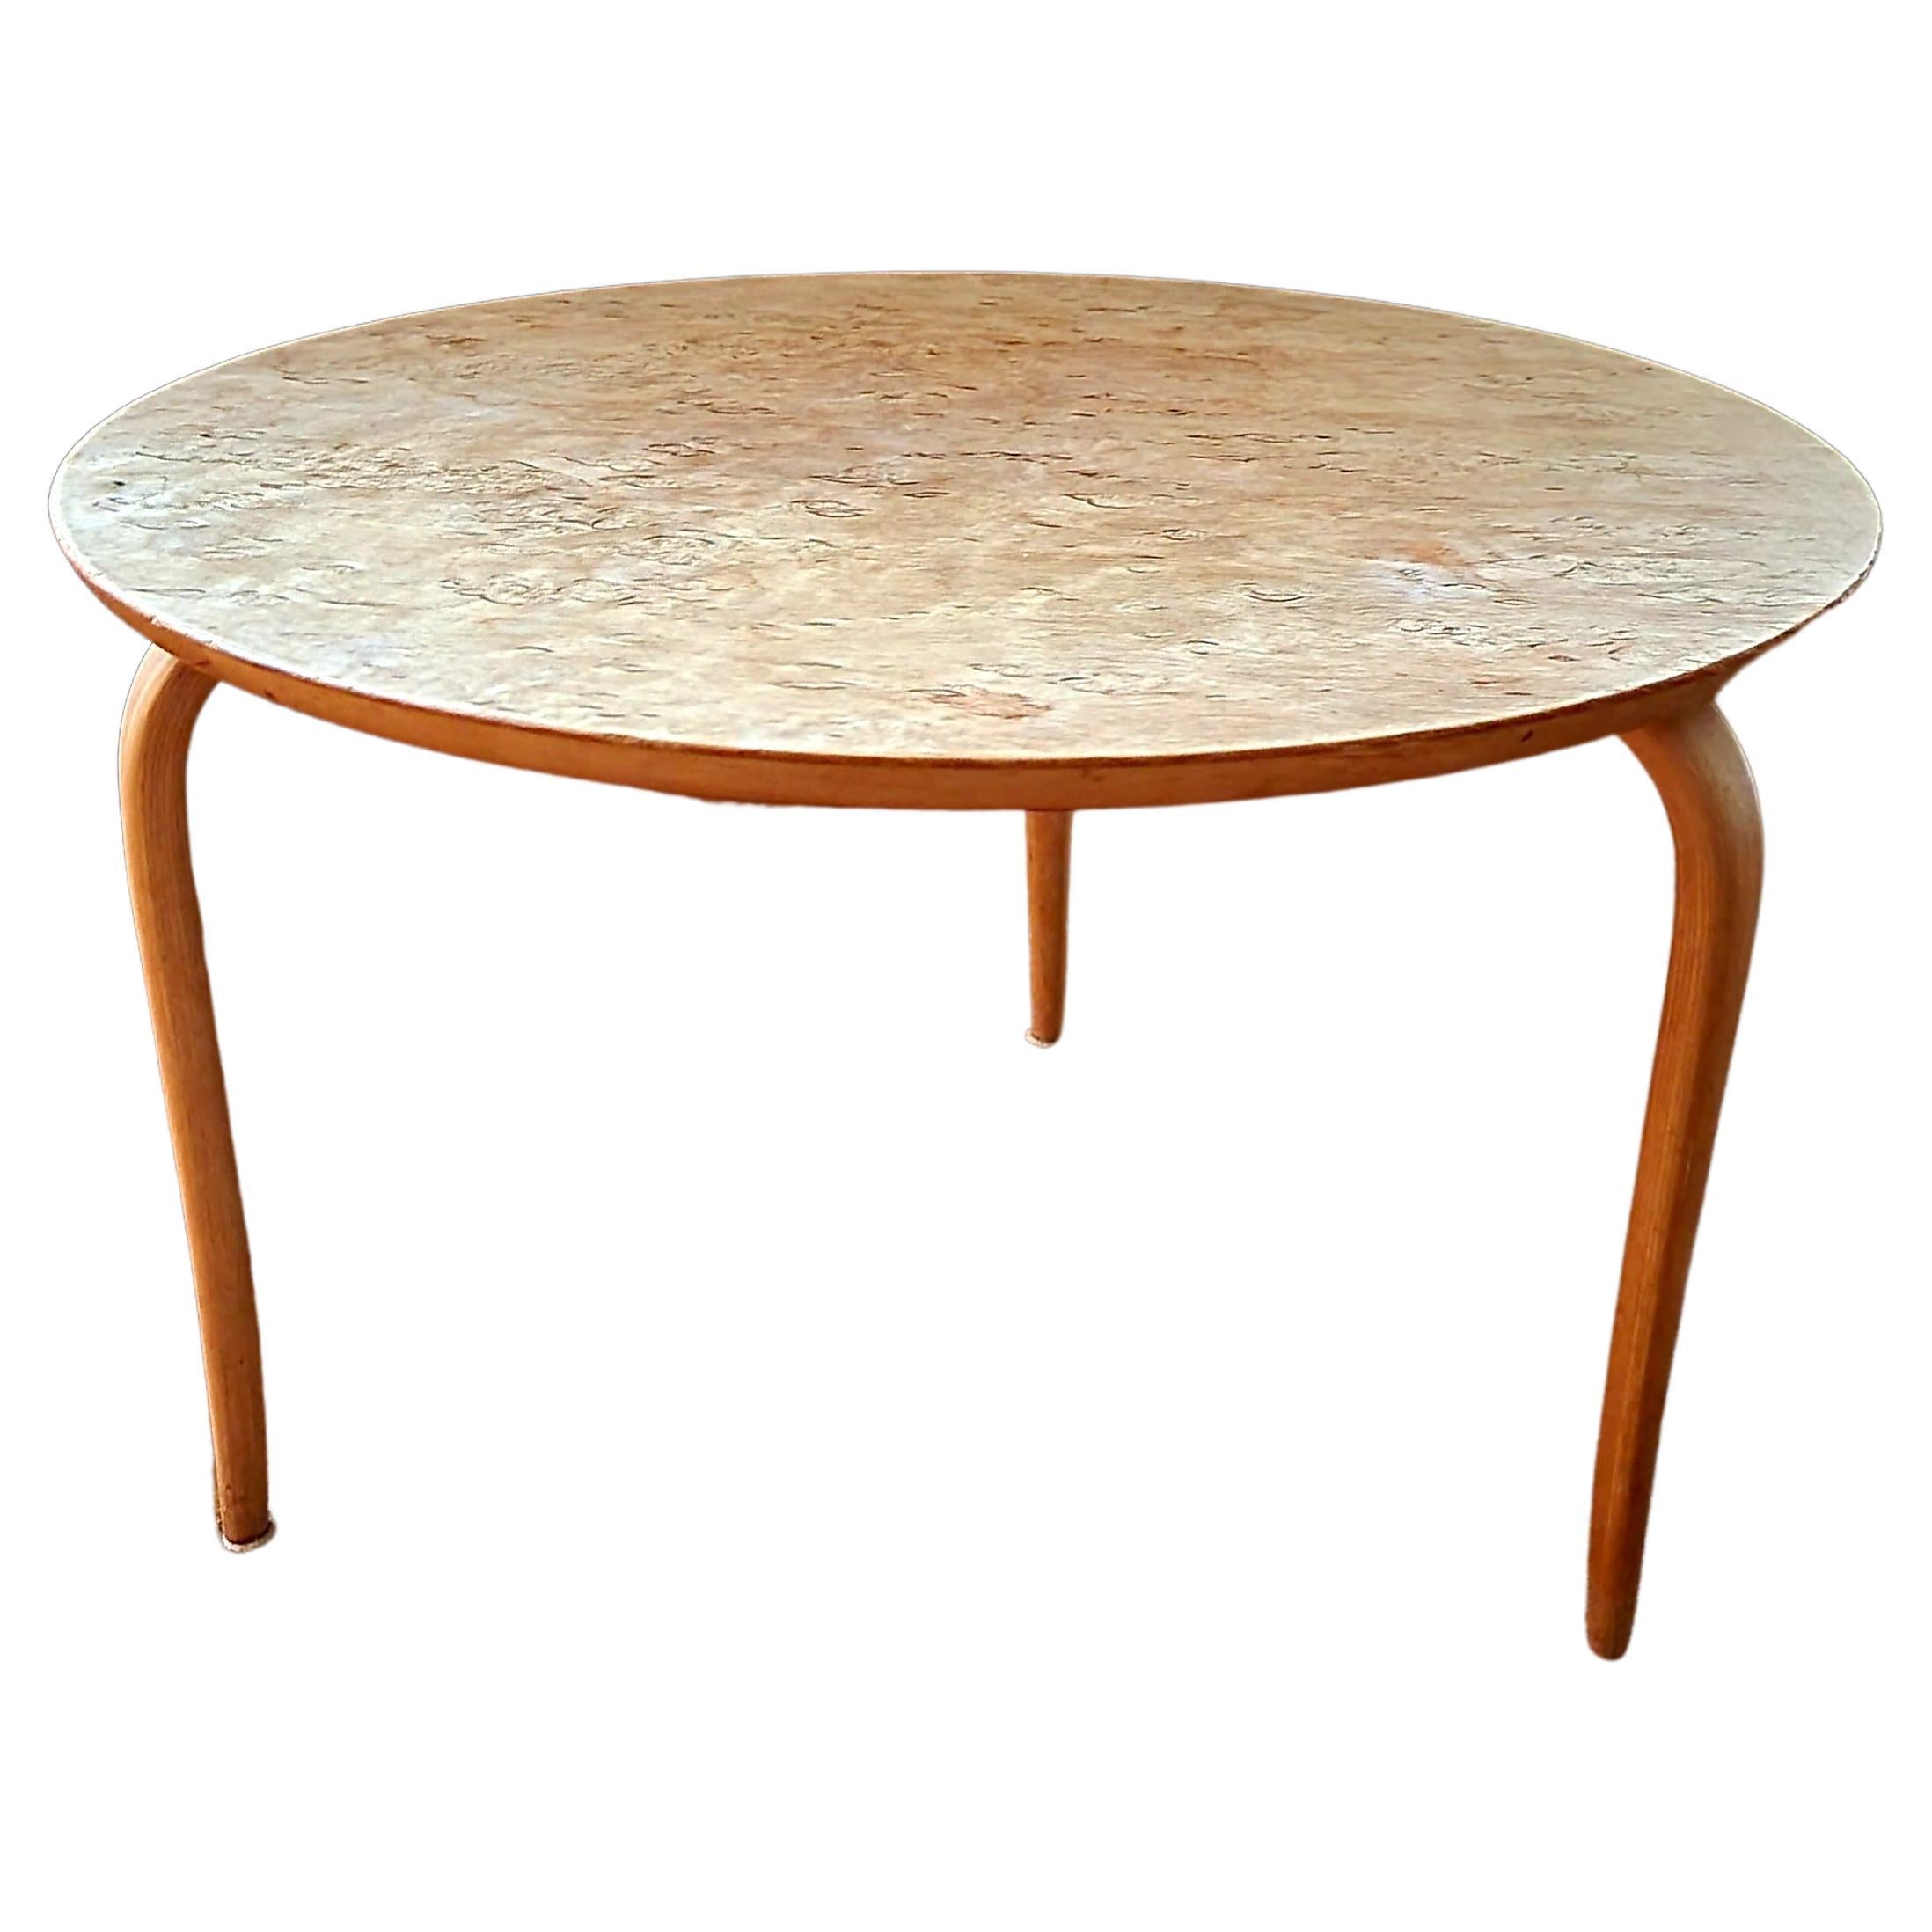 Table d'appoint « Annika » de Bruno Mathsson, en bouleau, style scandinave moderne, datée de 1974 en vente